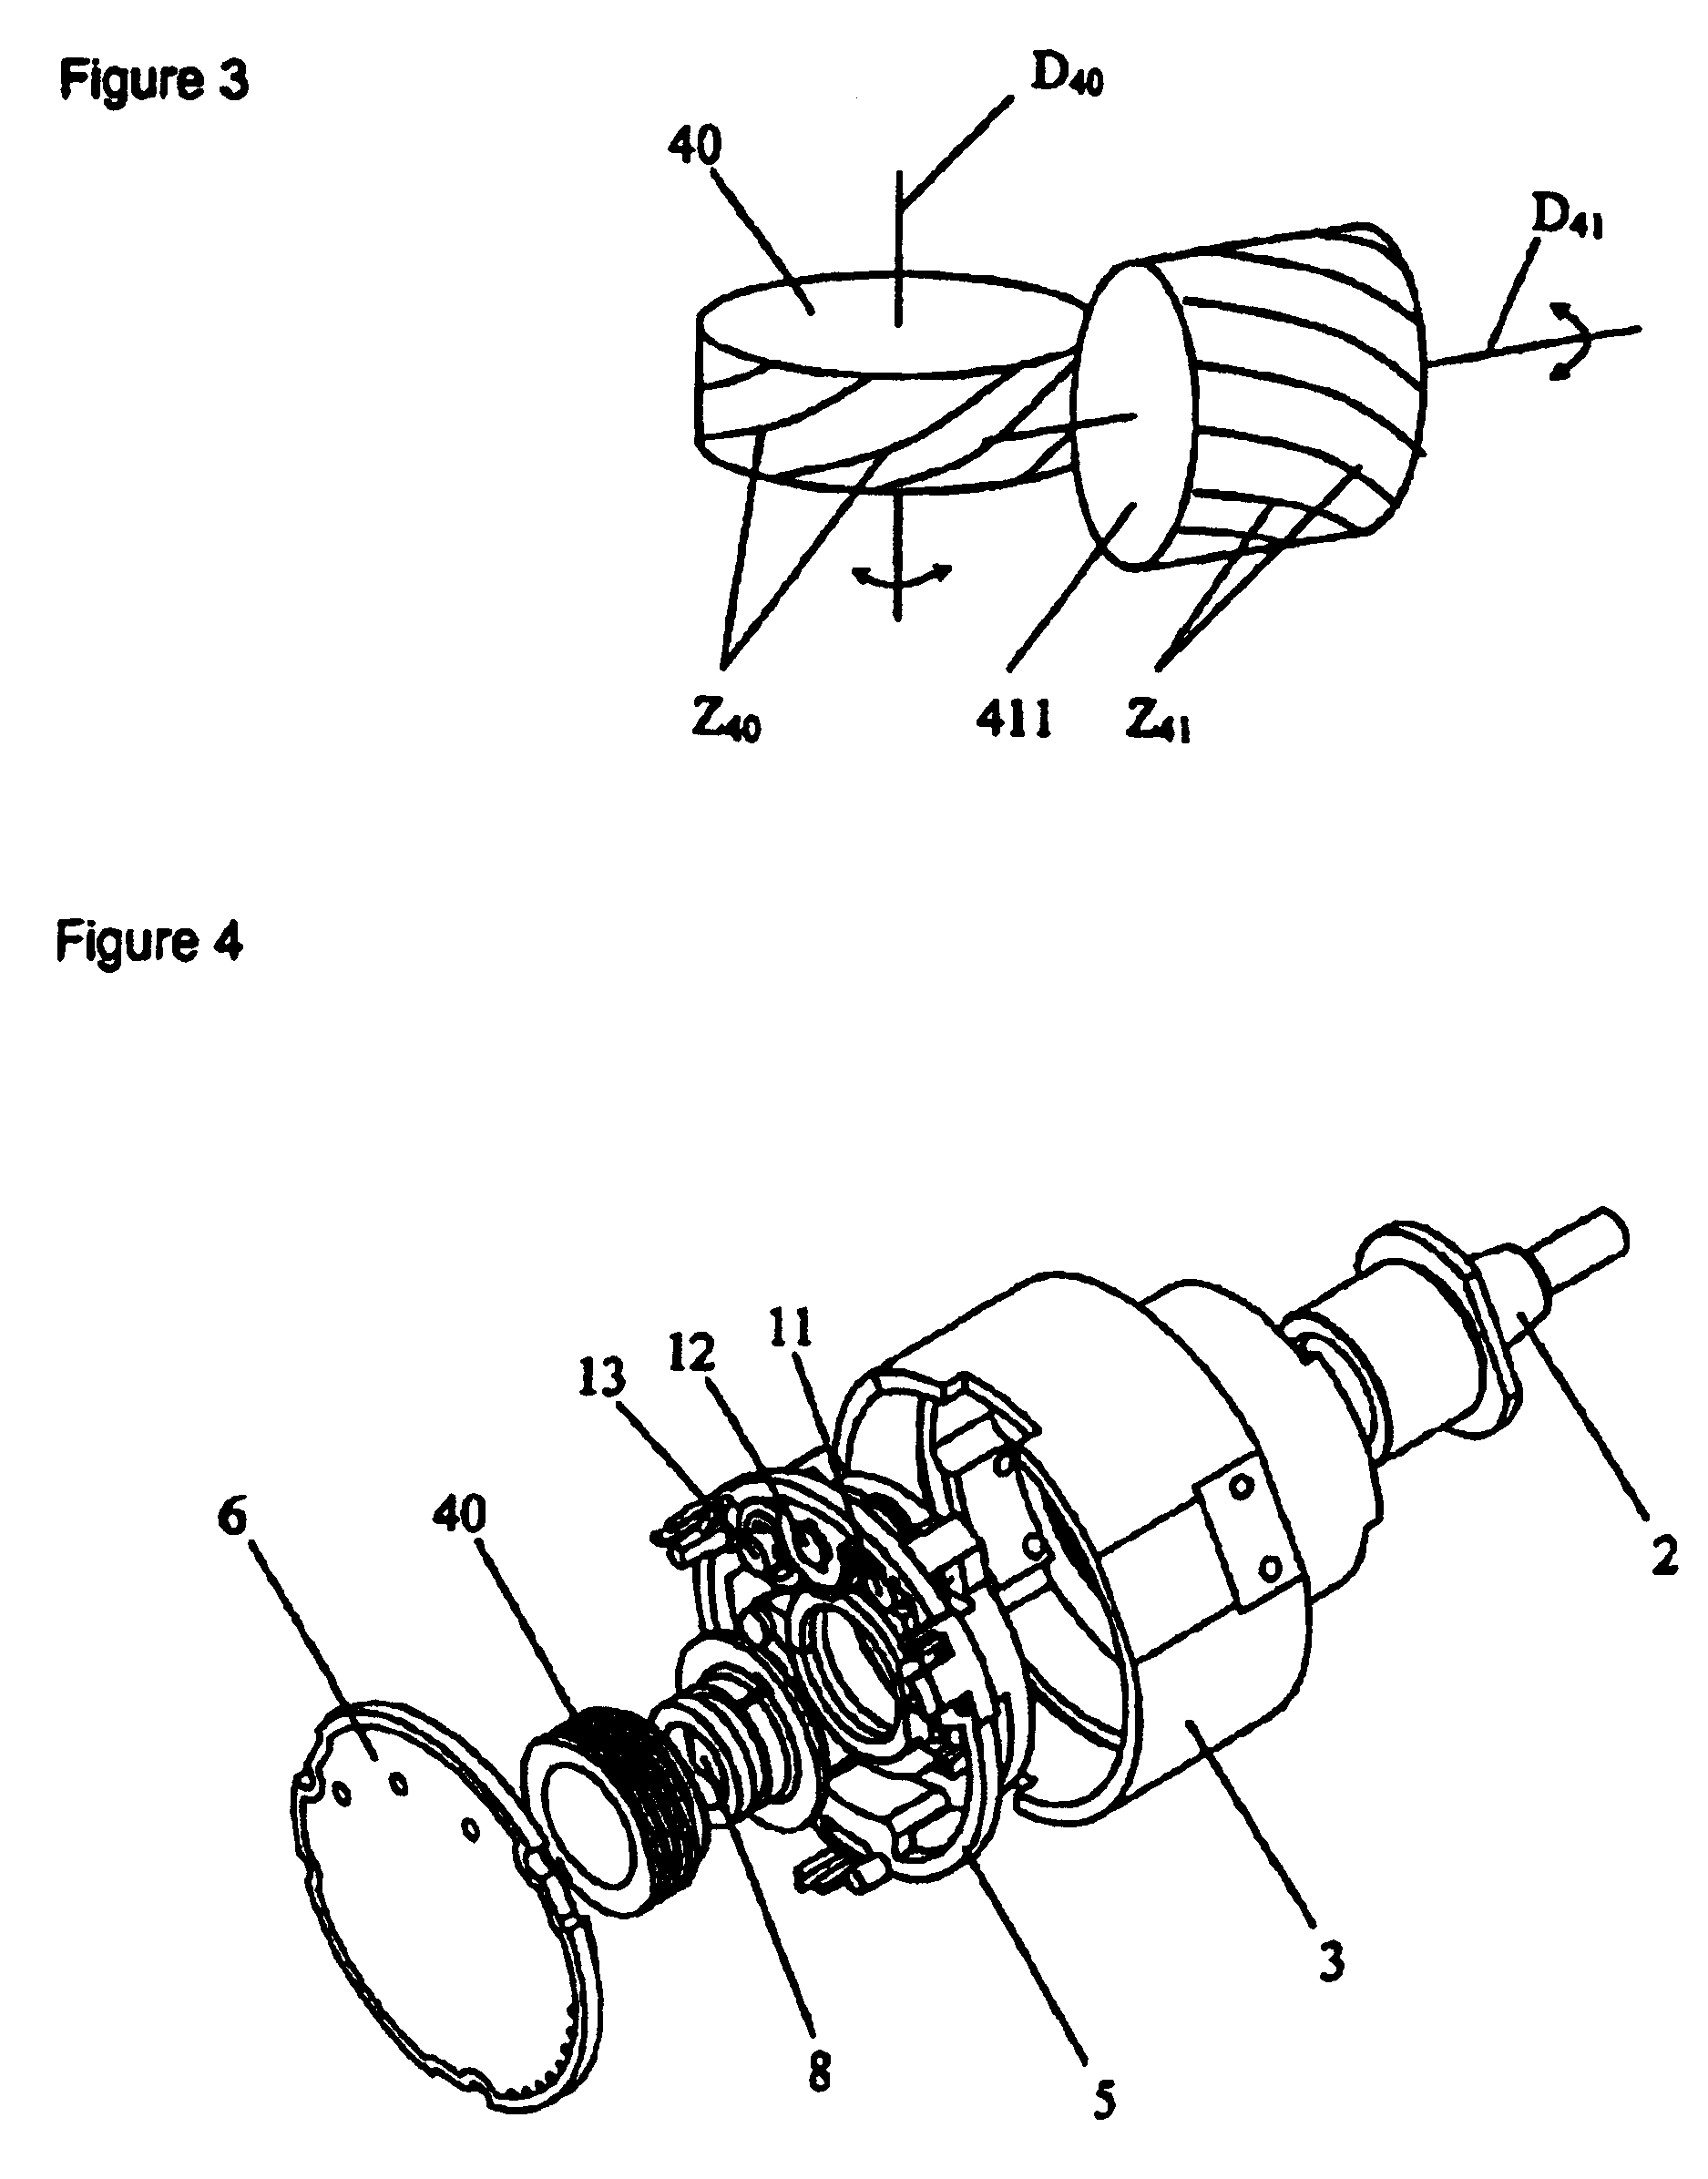 Multi-turn angle transducer